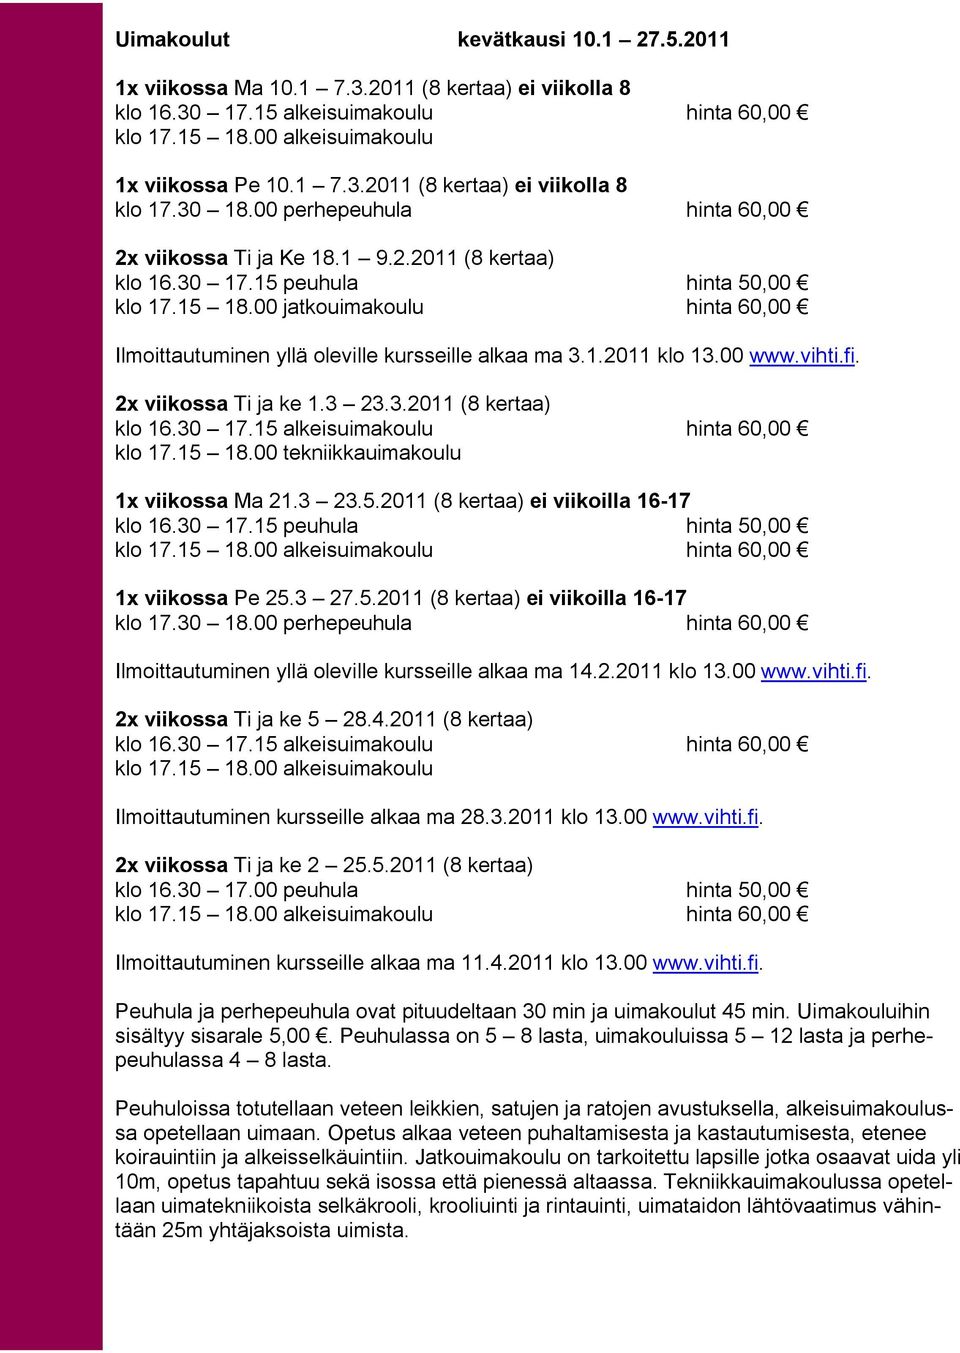 00 jatkouimakoulu hinta 60,00 Ilmoittautuminen yllä oleville kursseille alkaa ma 3.1.2011 klo 13.00 www.vihti.fi. 2x viikossa Ti ja ke 1.3 23.3.2011 (8 kertaa) klo 16.30 17.